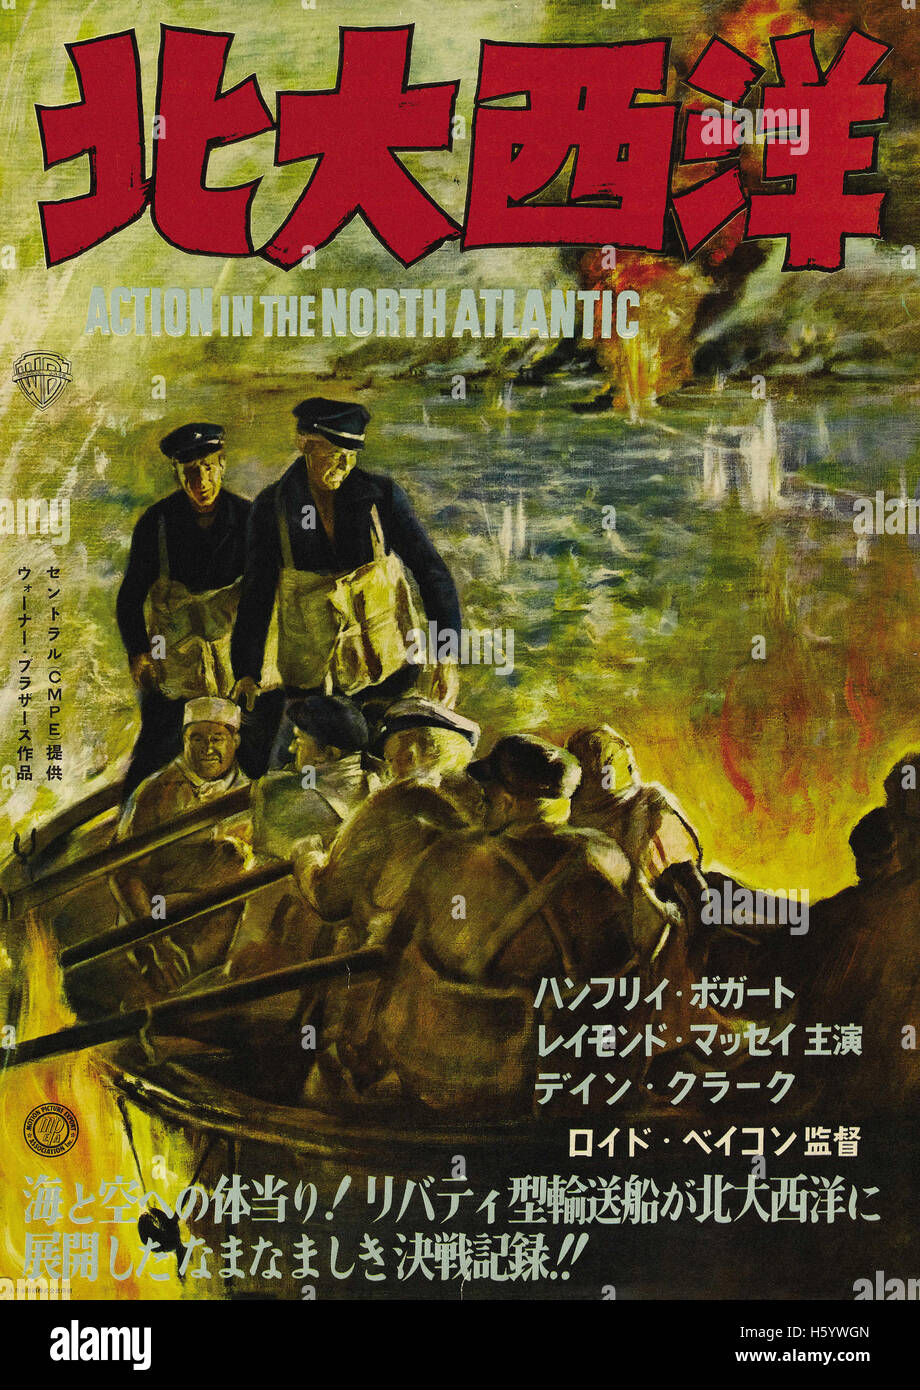 Azione nel Nord Atlantico - Giapponese poster del filmato Foto Stock